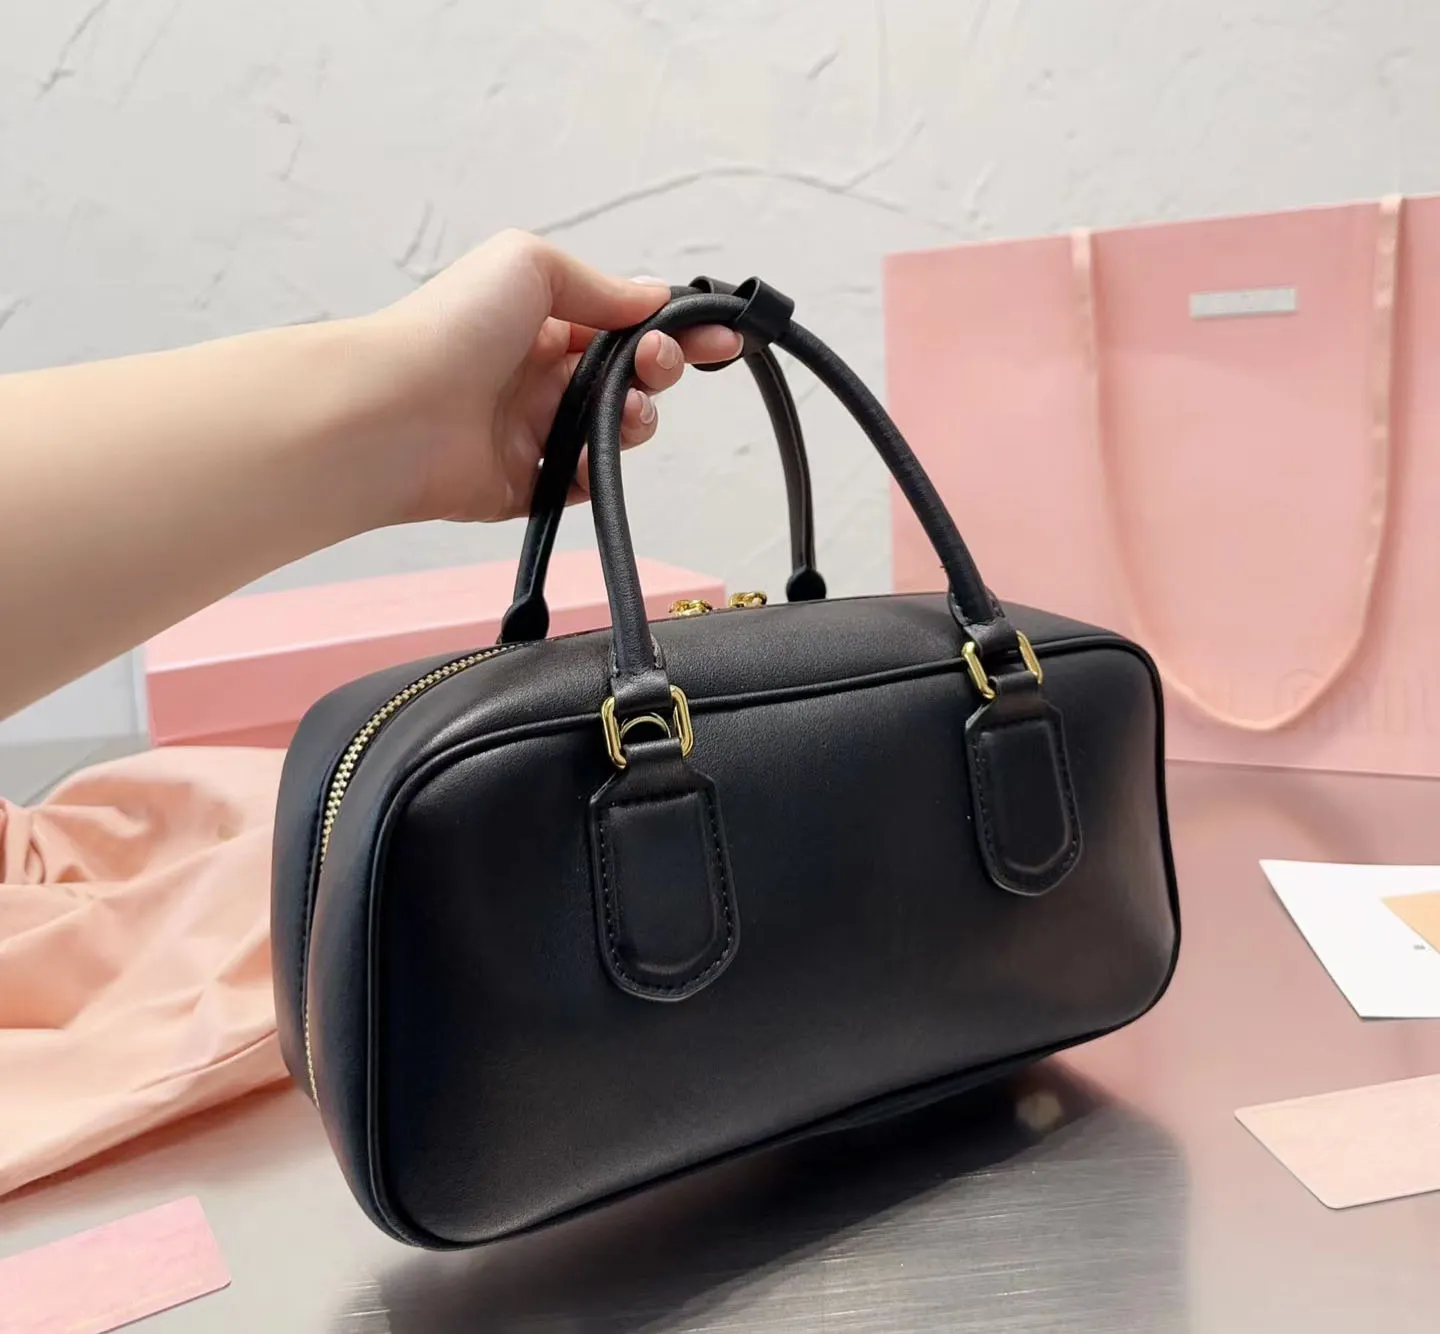 Lüks yüksek kaliteli tasarımcı çanta hafif sevimli makyaj çantası seyahat çantası vintage klasik büyük kapasiteli el çantası